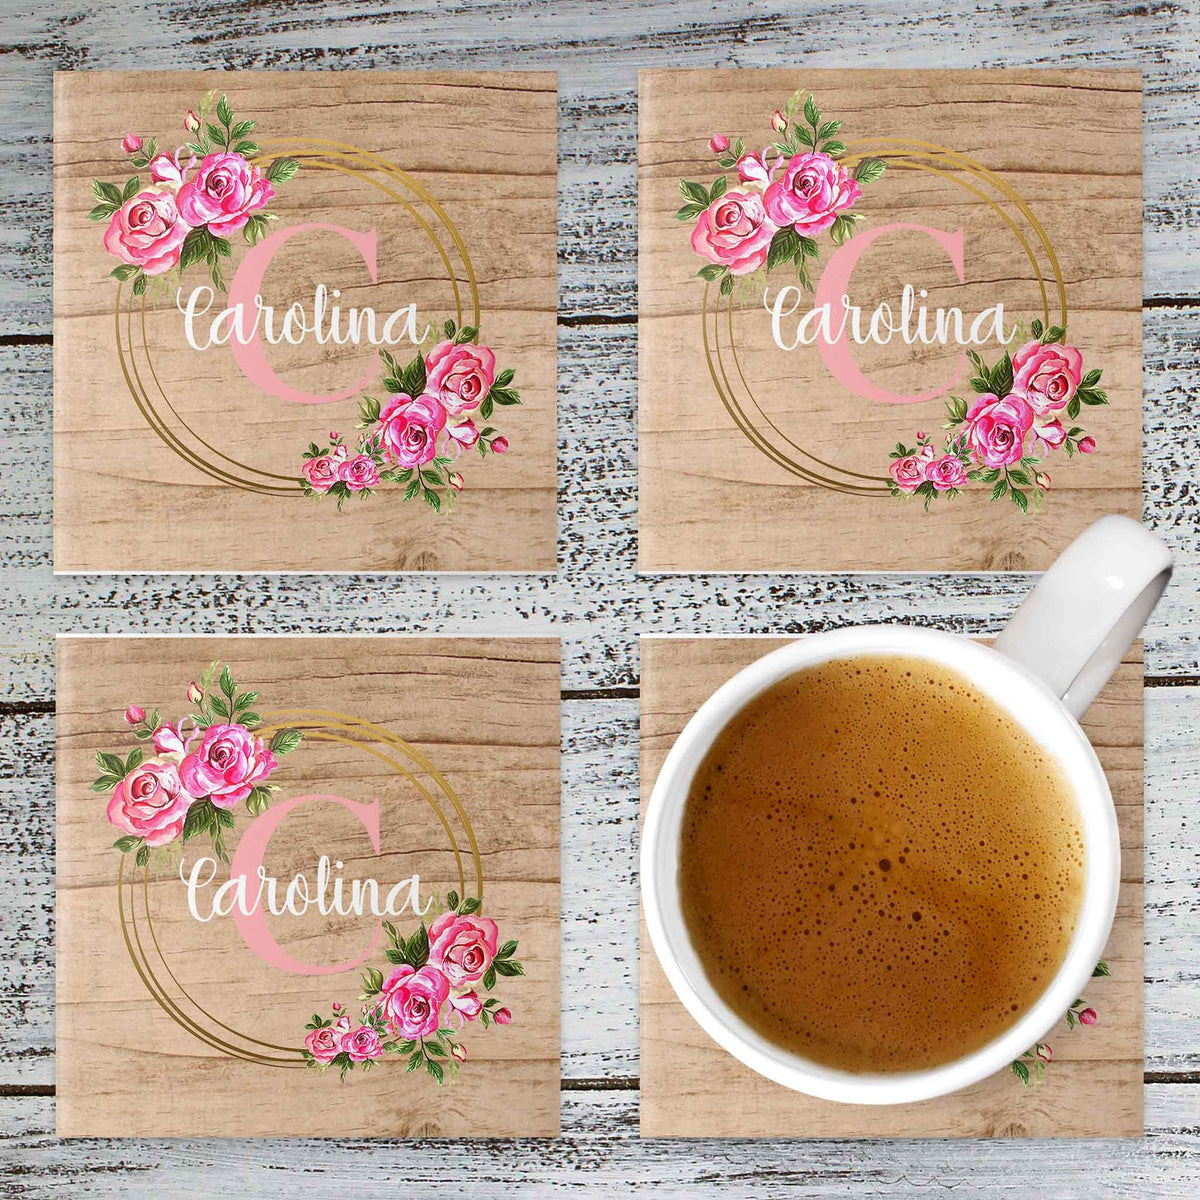 Personalized Coasters | Custom Stone Coaster Set | Gold Rose Wreath | Set of 4